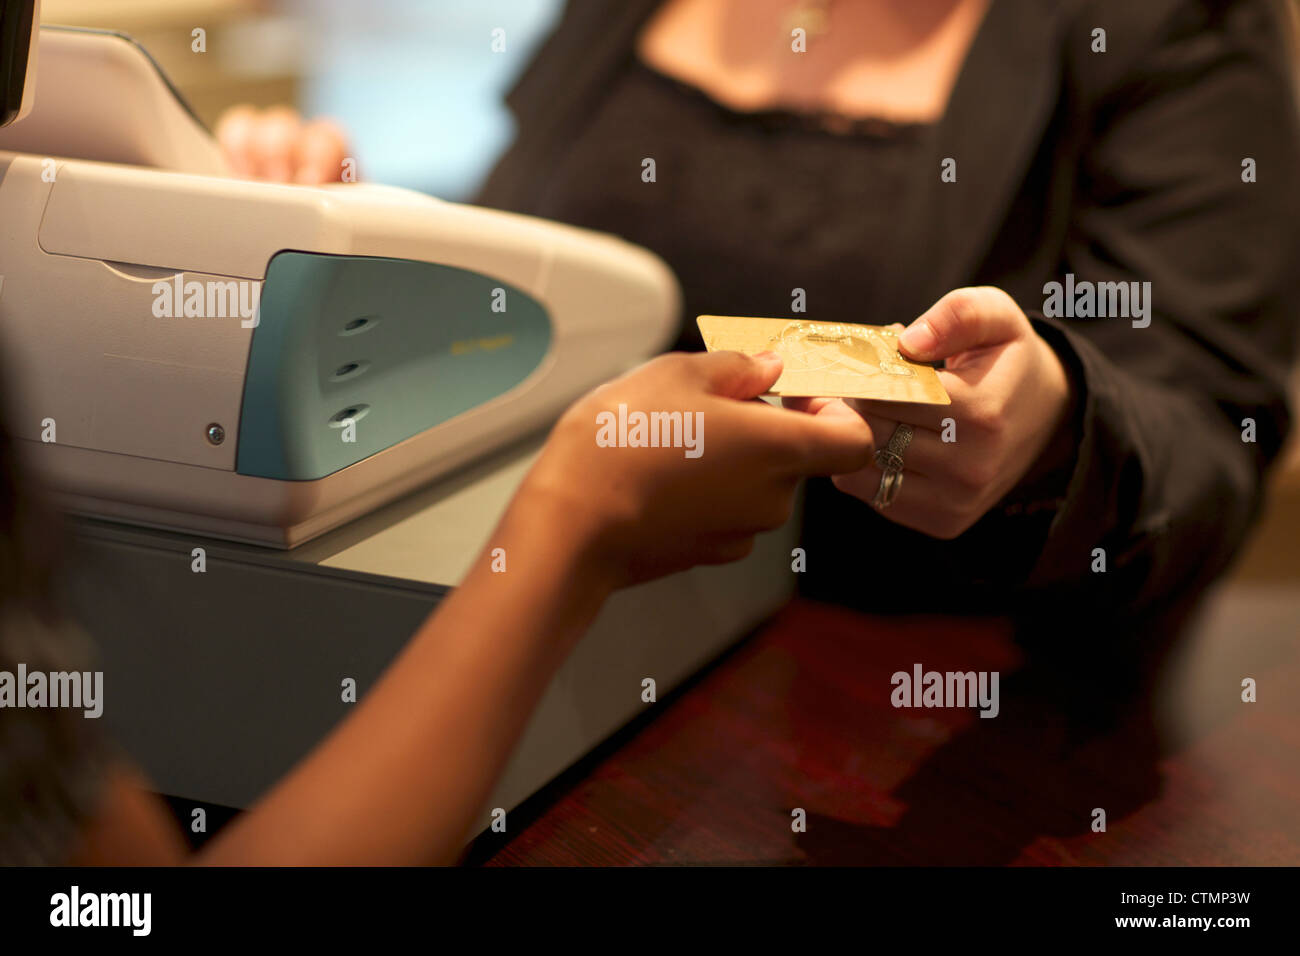 Zwei Menschen, die Austausch von einer Kreditkarte an einer Kasse zeigen, Pietermaritzburg, KwaZulu-Natal, Südafrika Stockfoto